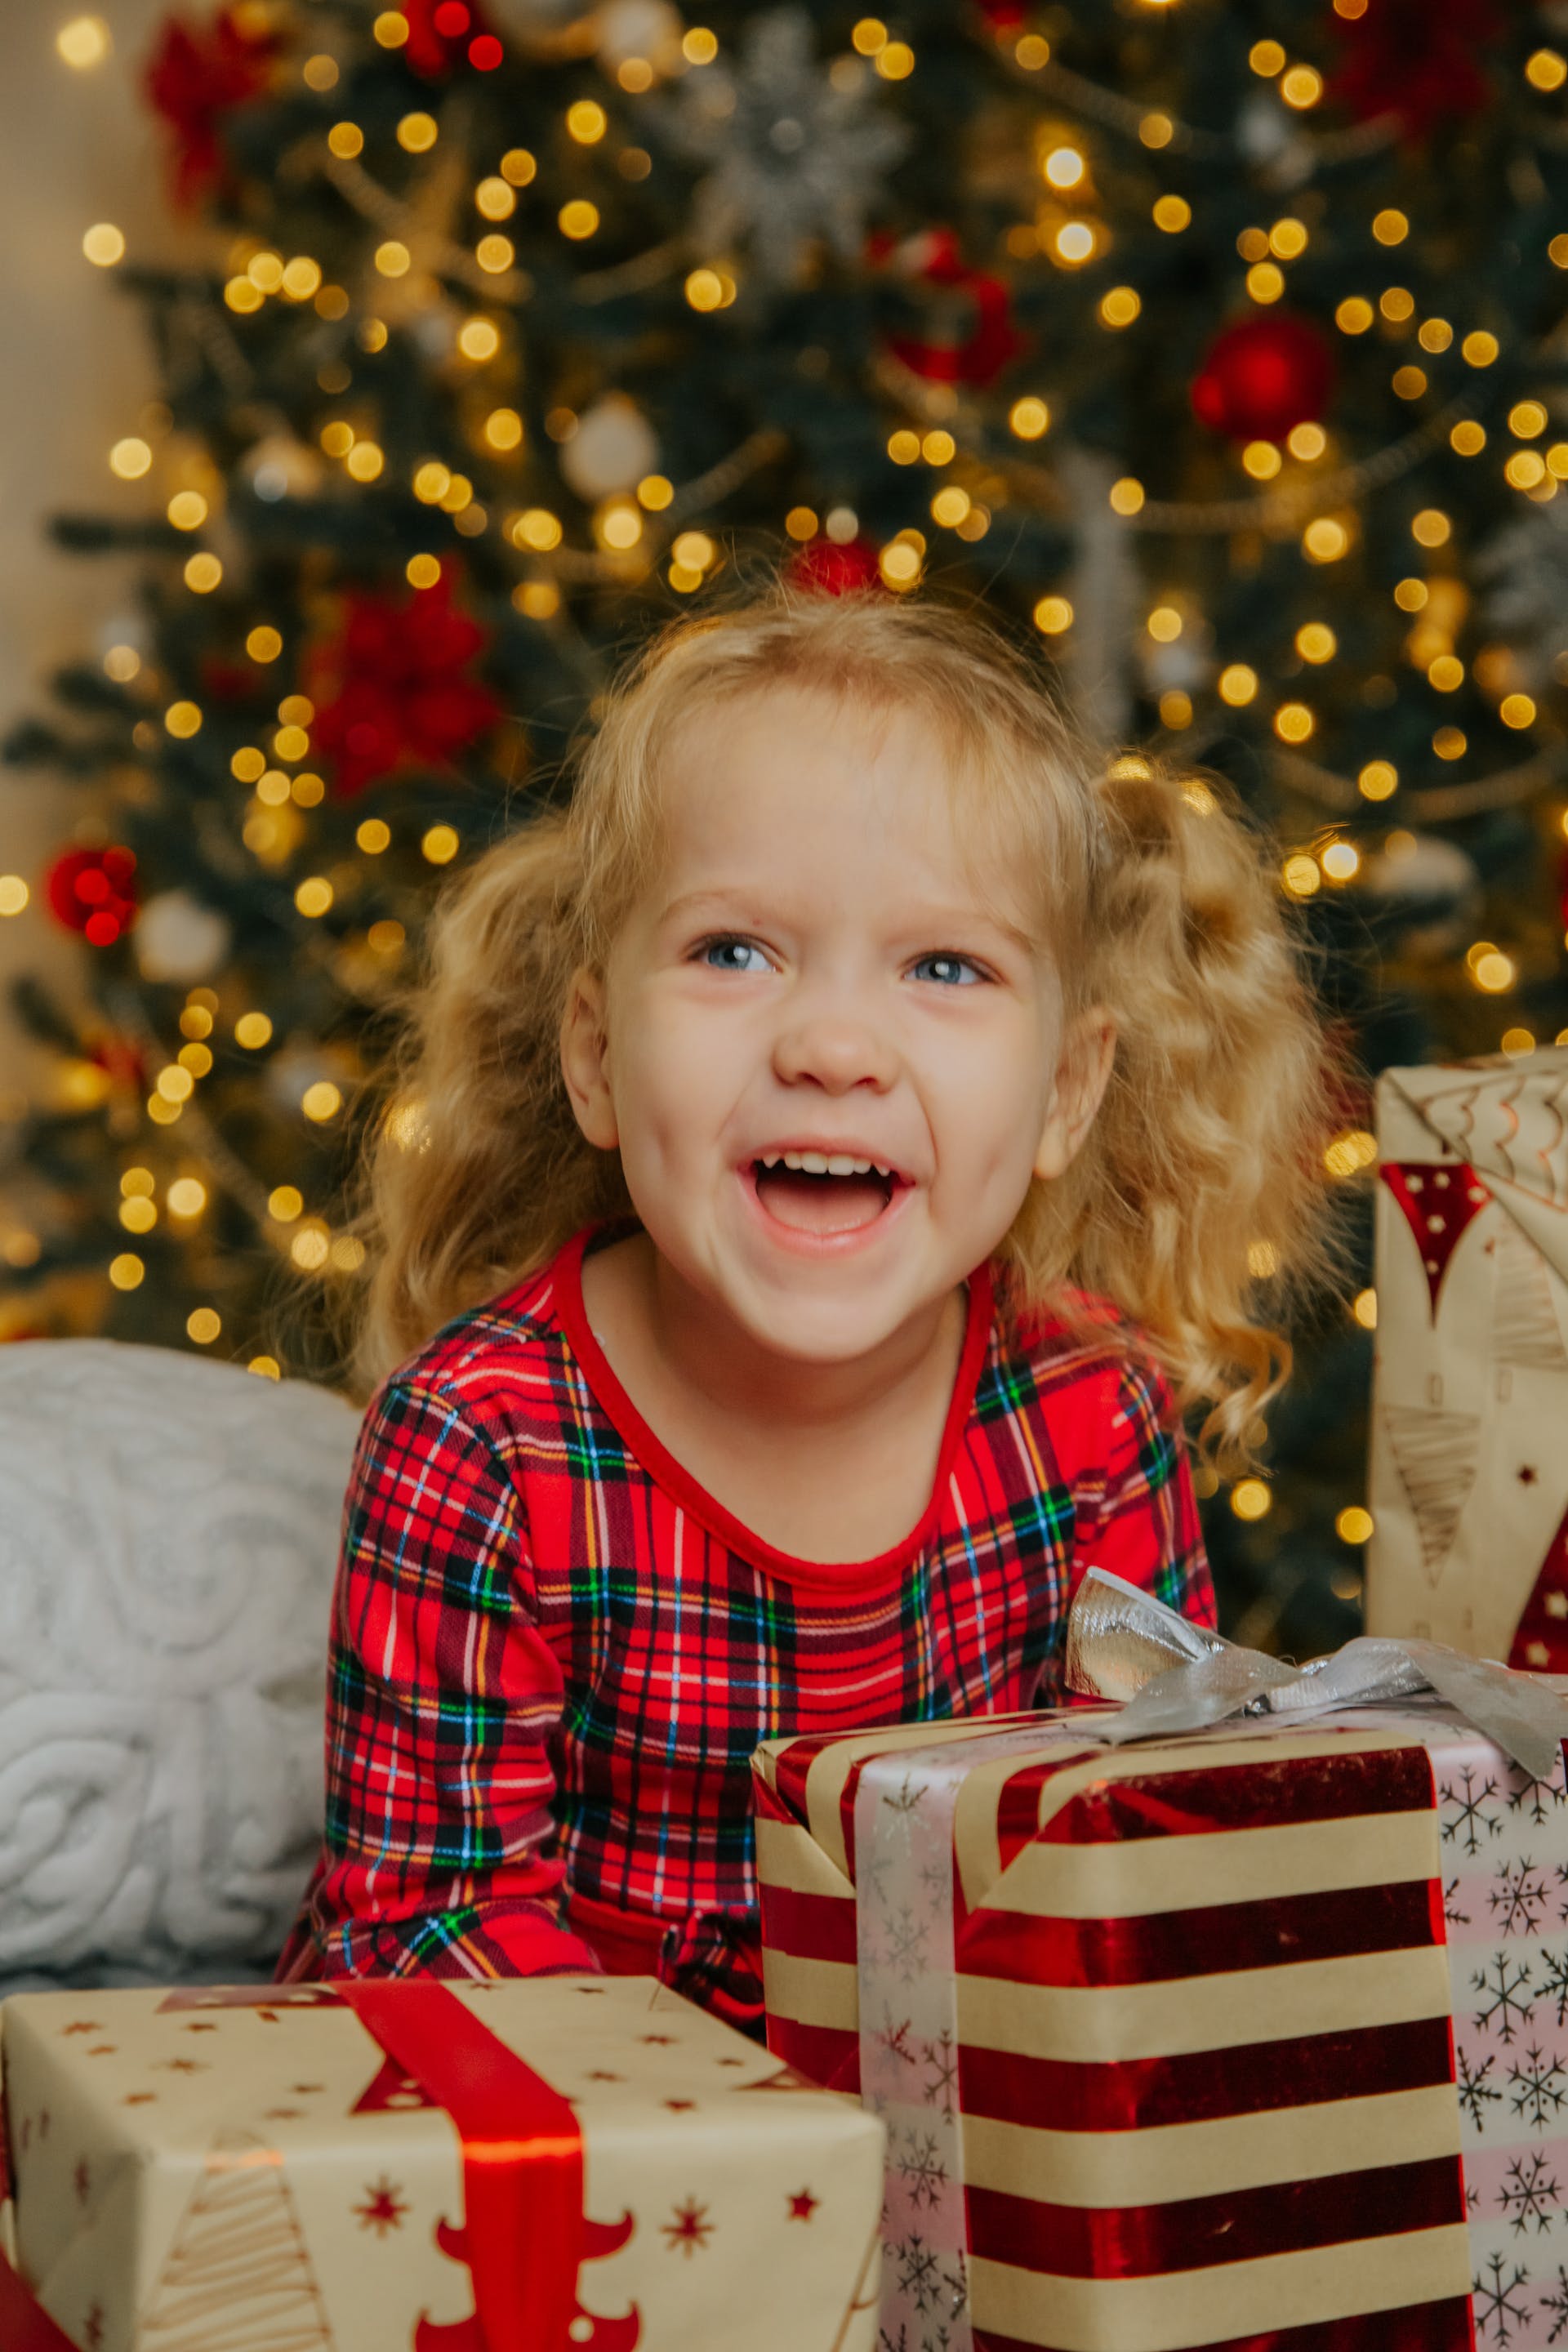 Une petite fille souriante tenant des cadeaux de Noël | Source : Pexels